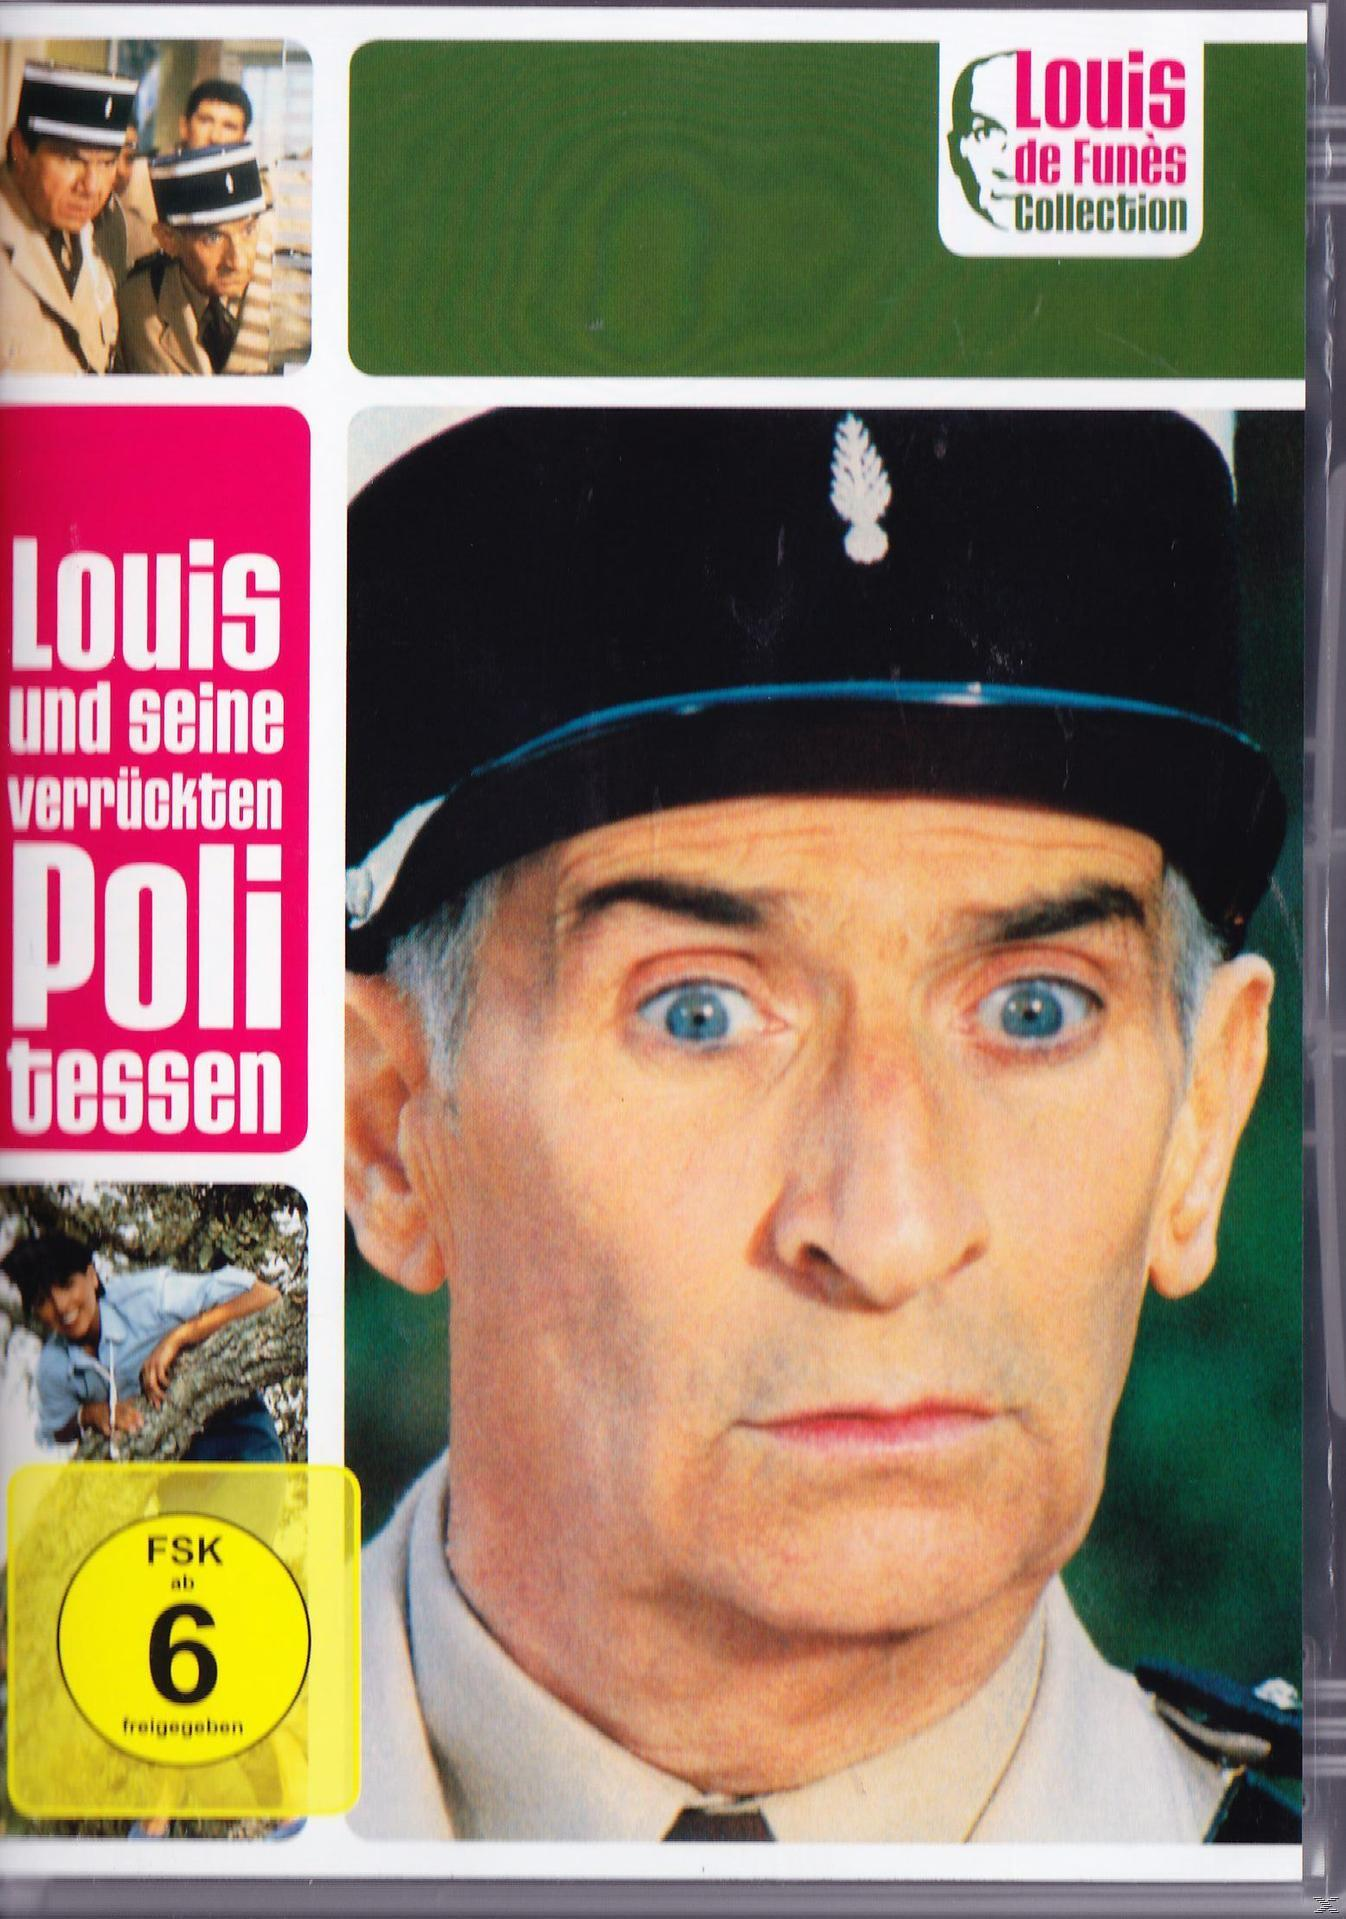 Louis und Funès seine de - Politessen verrückten DVD Collection Louis